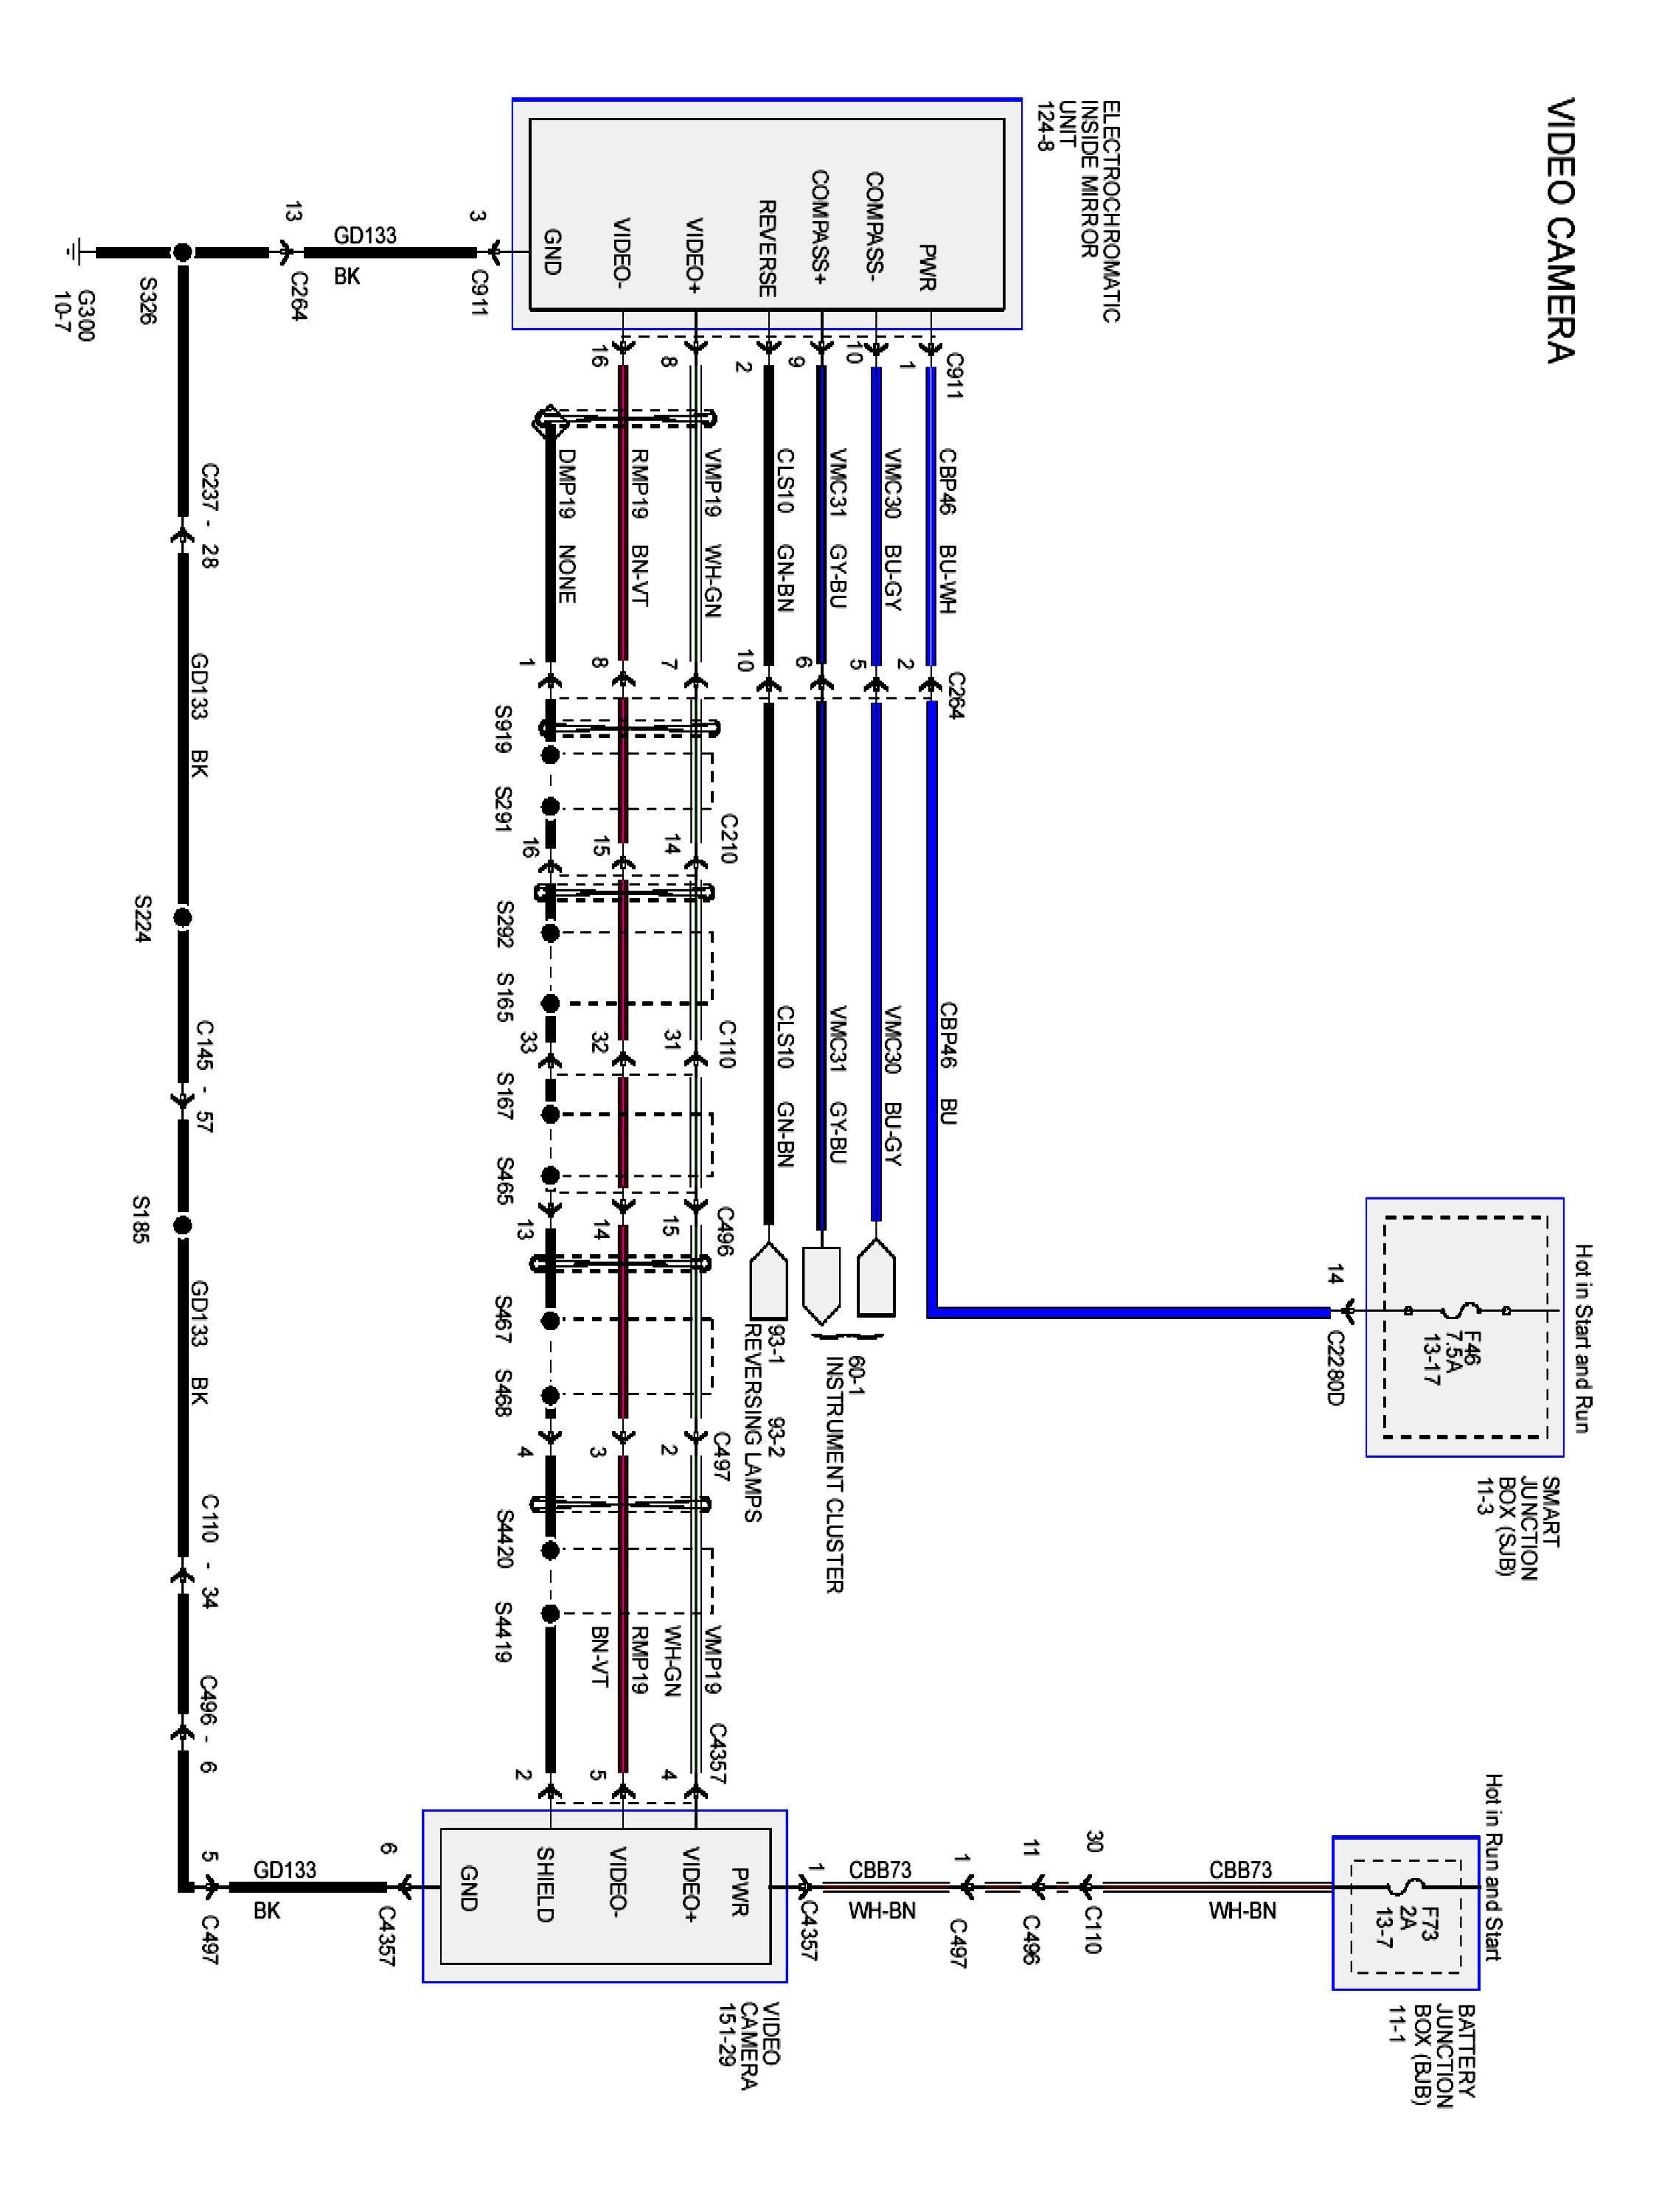 voyager backup camera wiring diagram Download Wiring Diagram for Rear View Camera Save Backup Camera DOWNLOAD Wiring Diagram